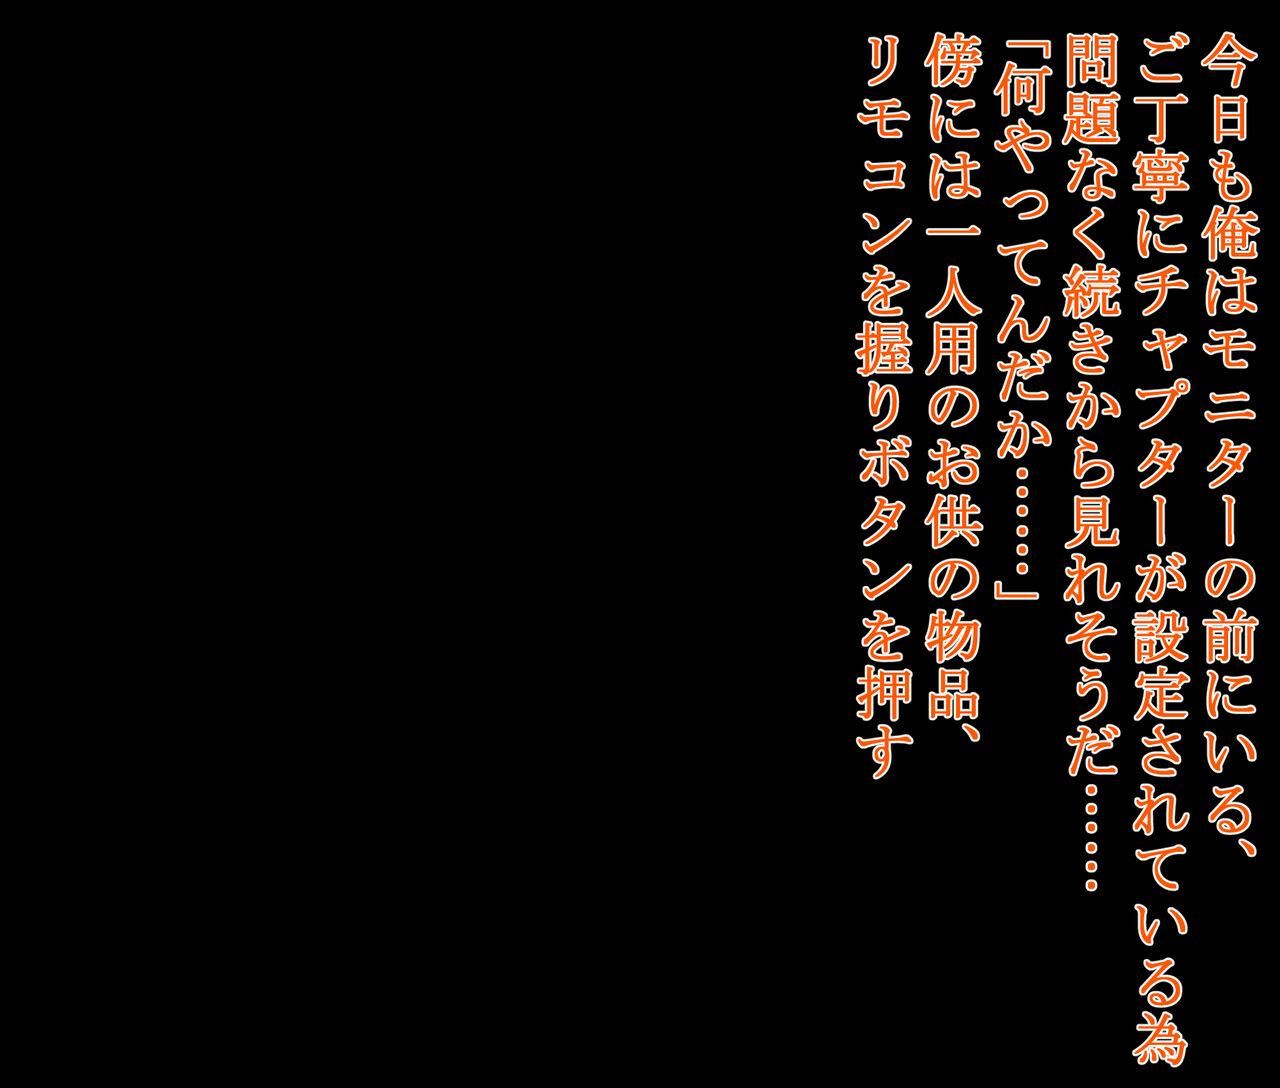 hīrō kuro neko vs kankaku kyōyū OB ‼ kage kaku enkaku chōkyō de yuki ma kuri ‼～ seigi no mikata no rīdā kara kuri chi 〇 po onaho ni ochiru shunkan ～ 220